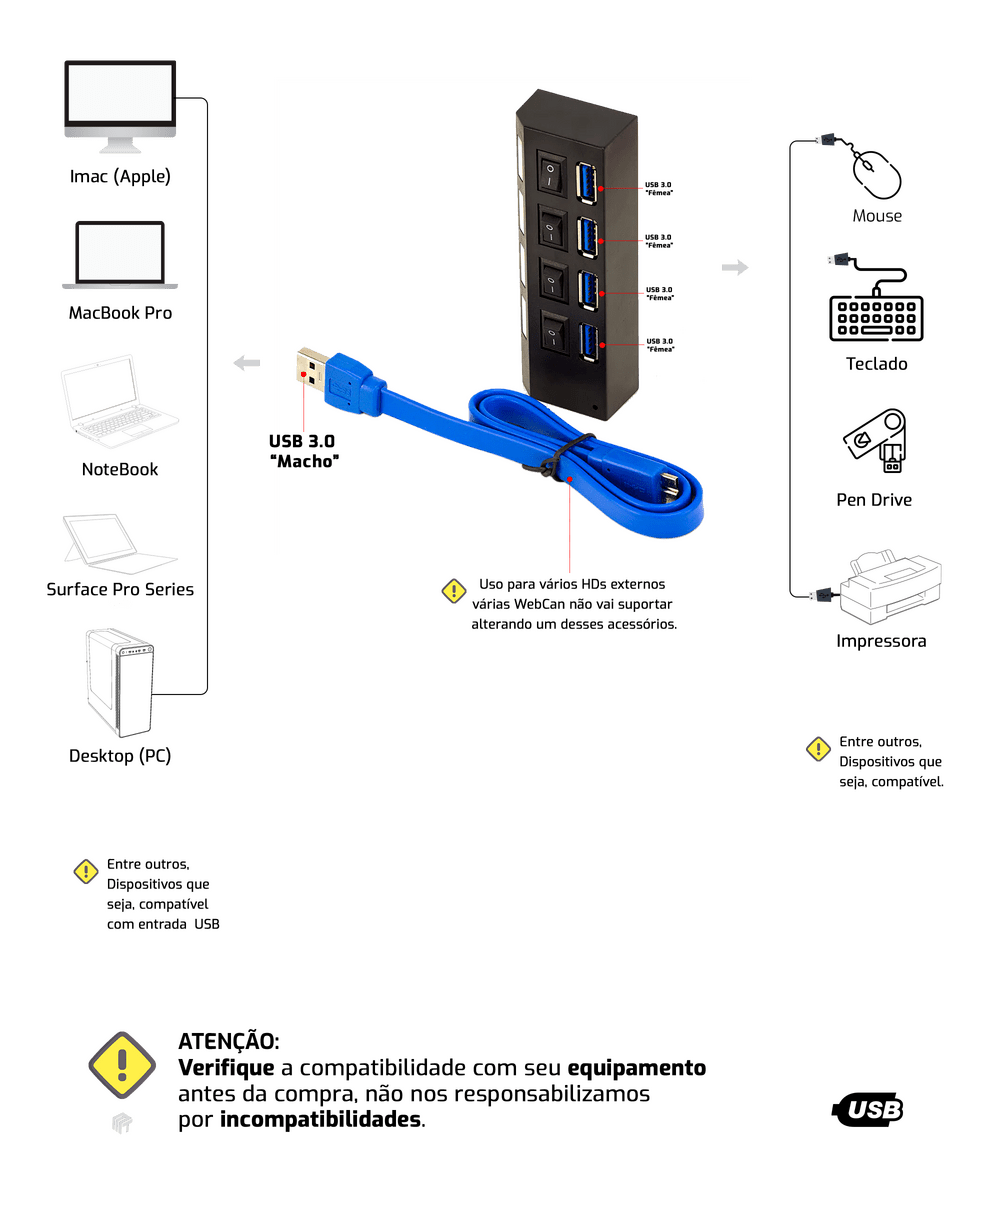 HUB USB 3.0 4 Portas